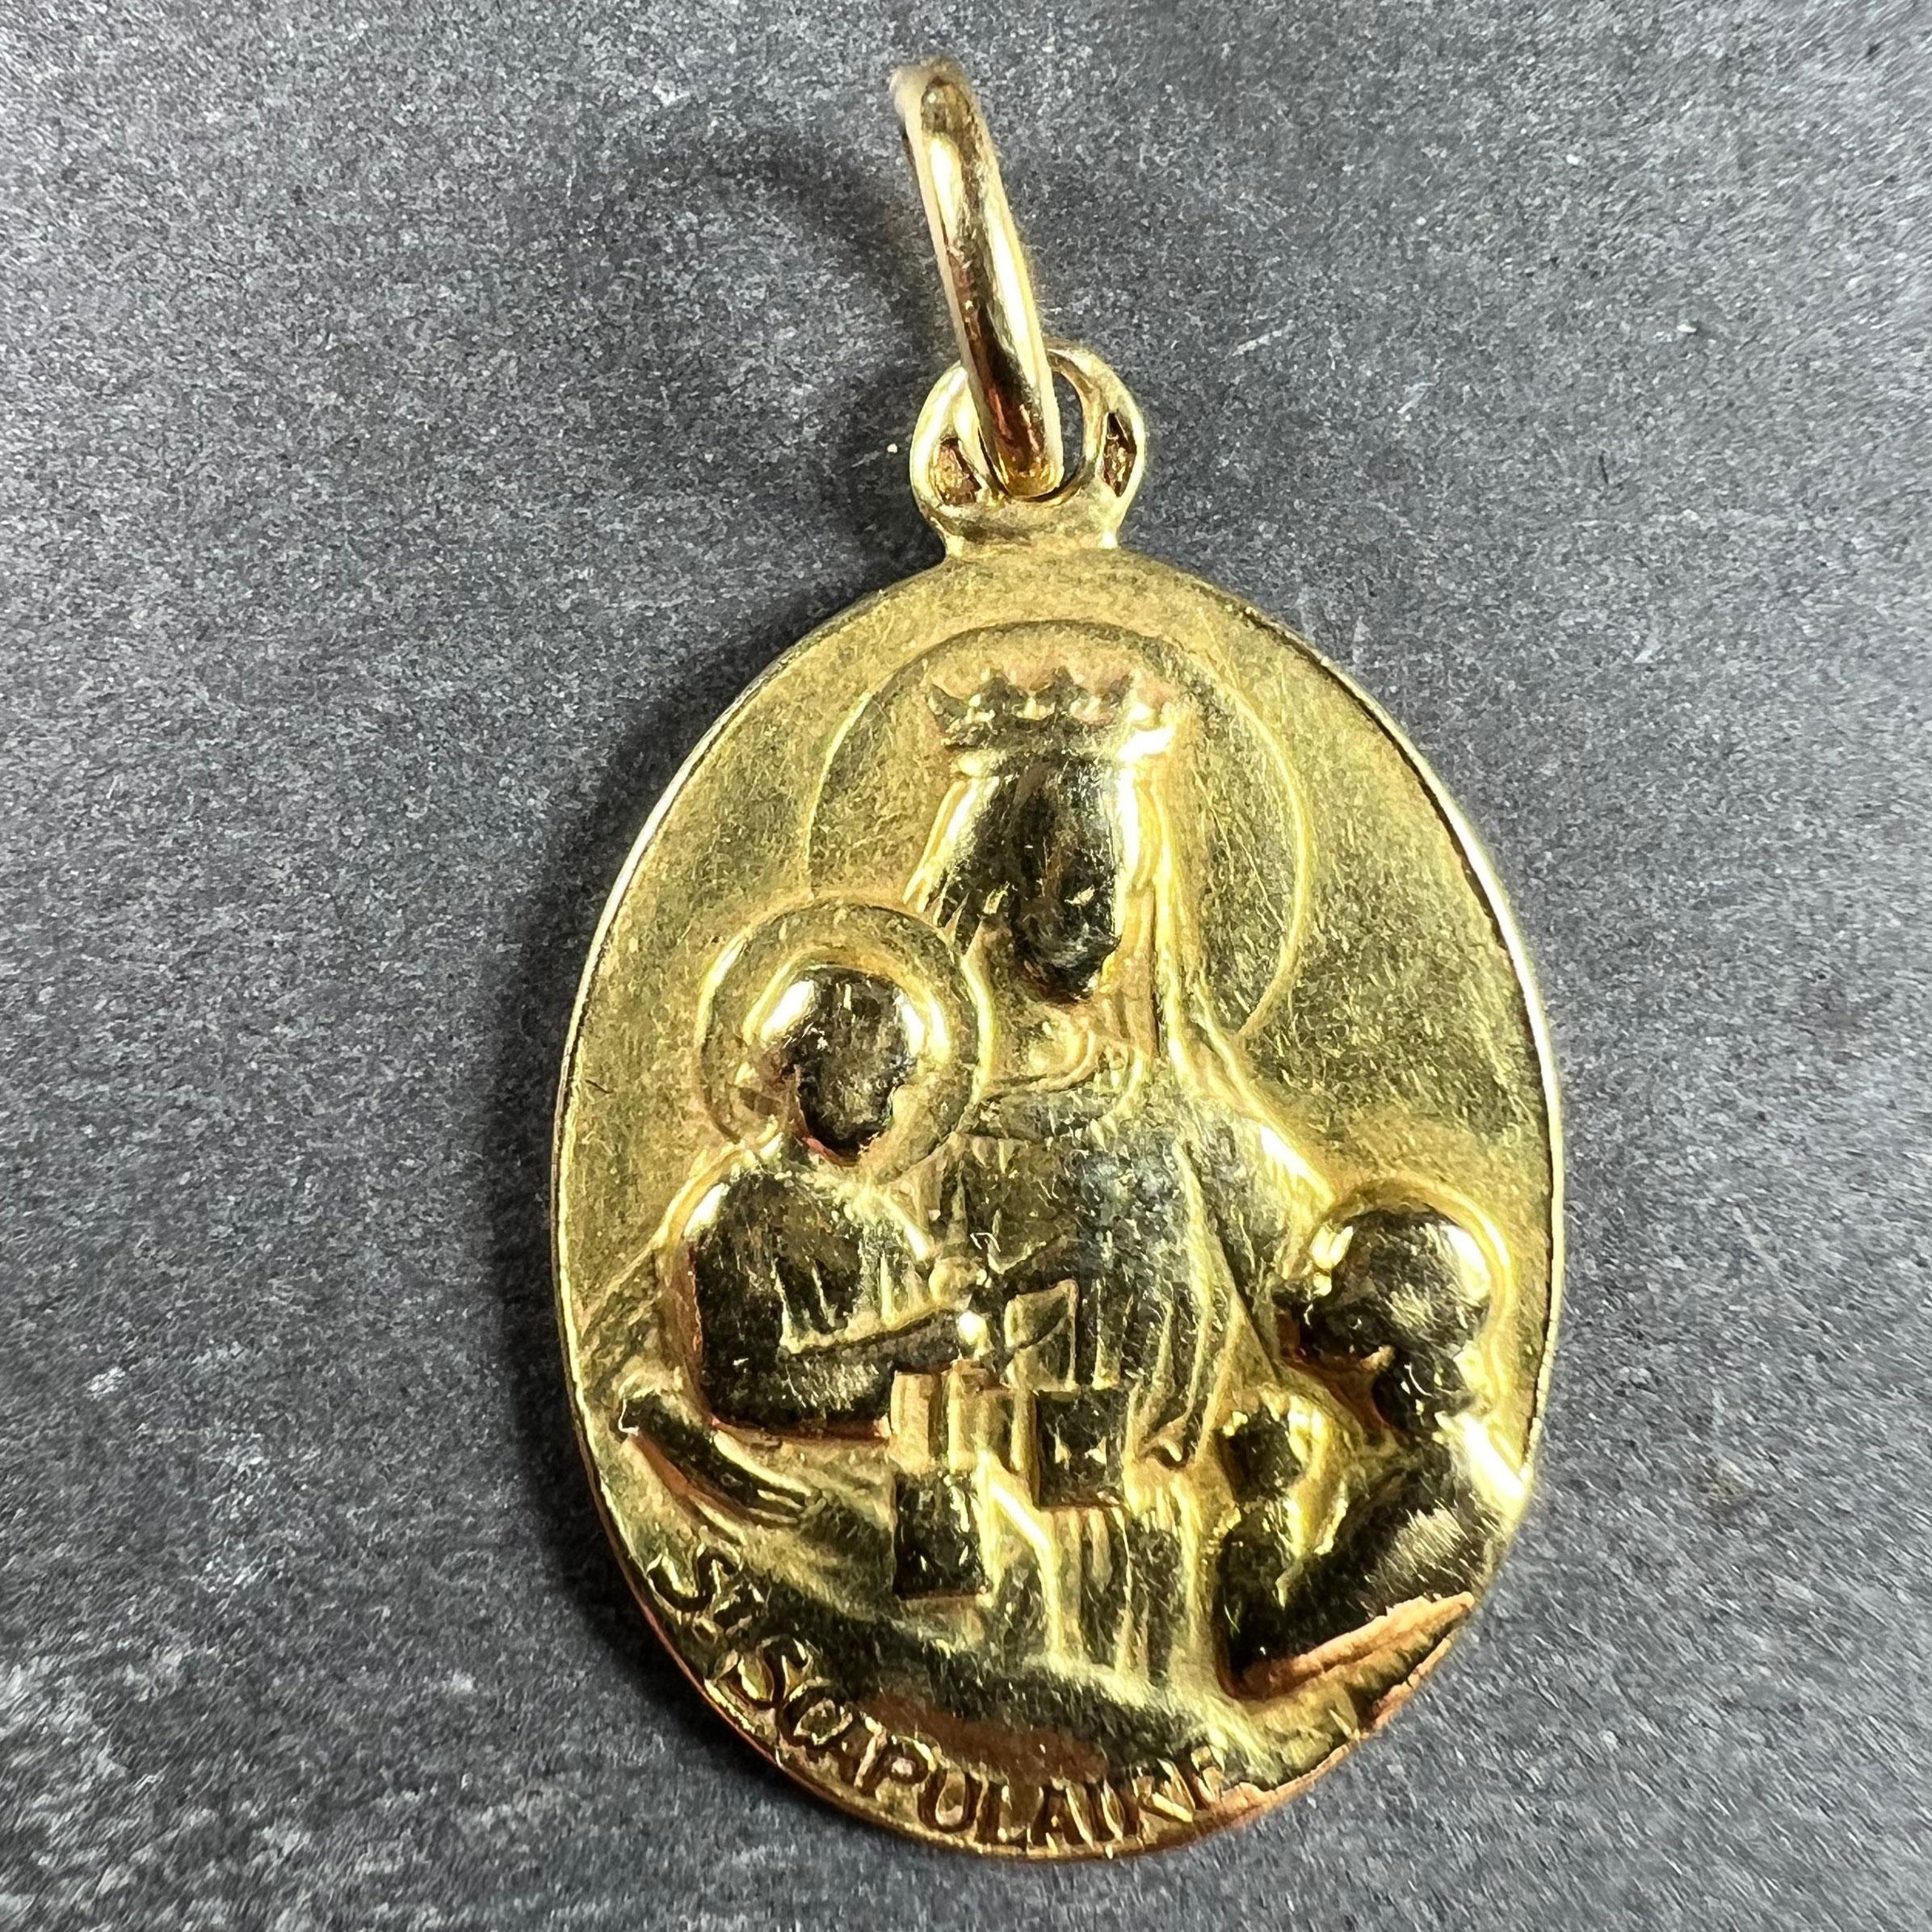 Pendentif à breloques en or jaune 18 carats (18K) conçu comme une médaille ovale avec un relief de la Sainte Vierge Marie en Madone avec le Christ enfant tenant un ensemble de scapulaires de dévotion, tandis qu'un enfant les prie. En dessous, le nom